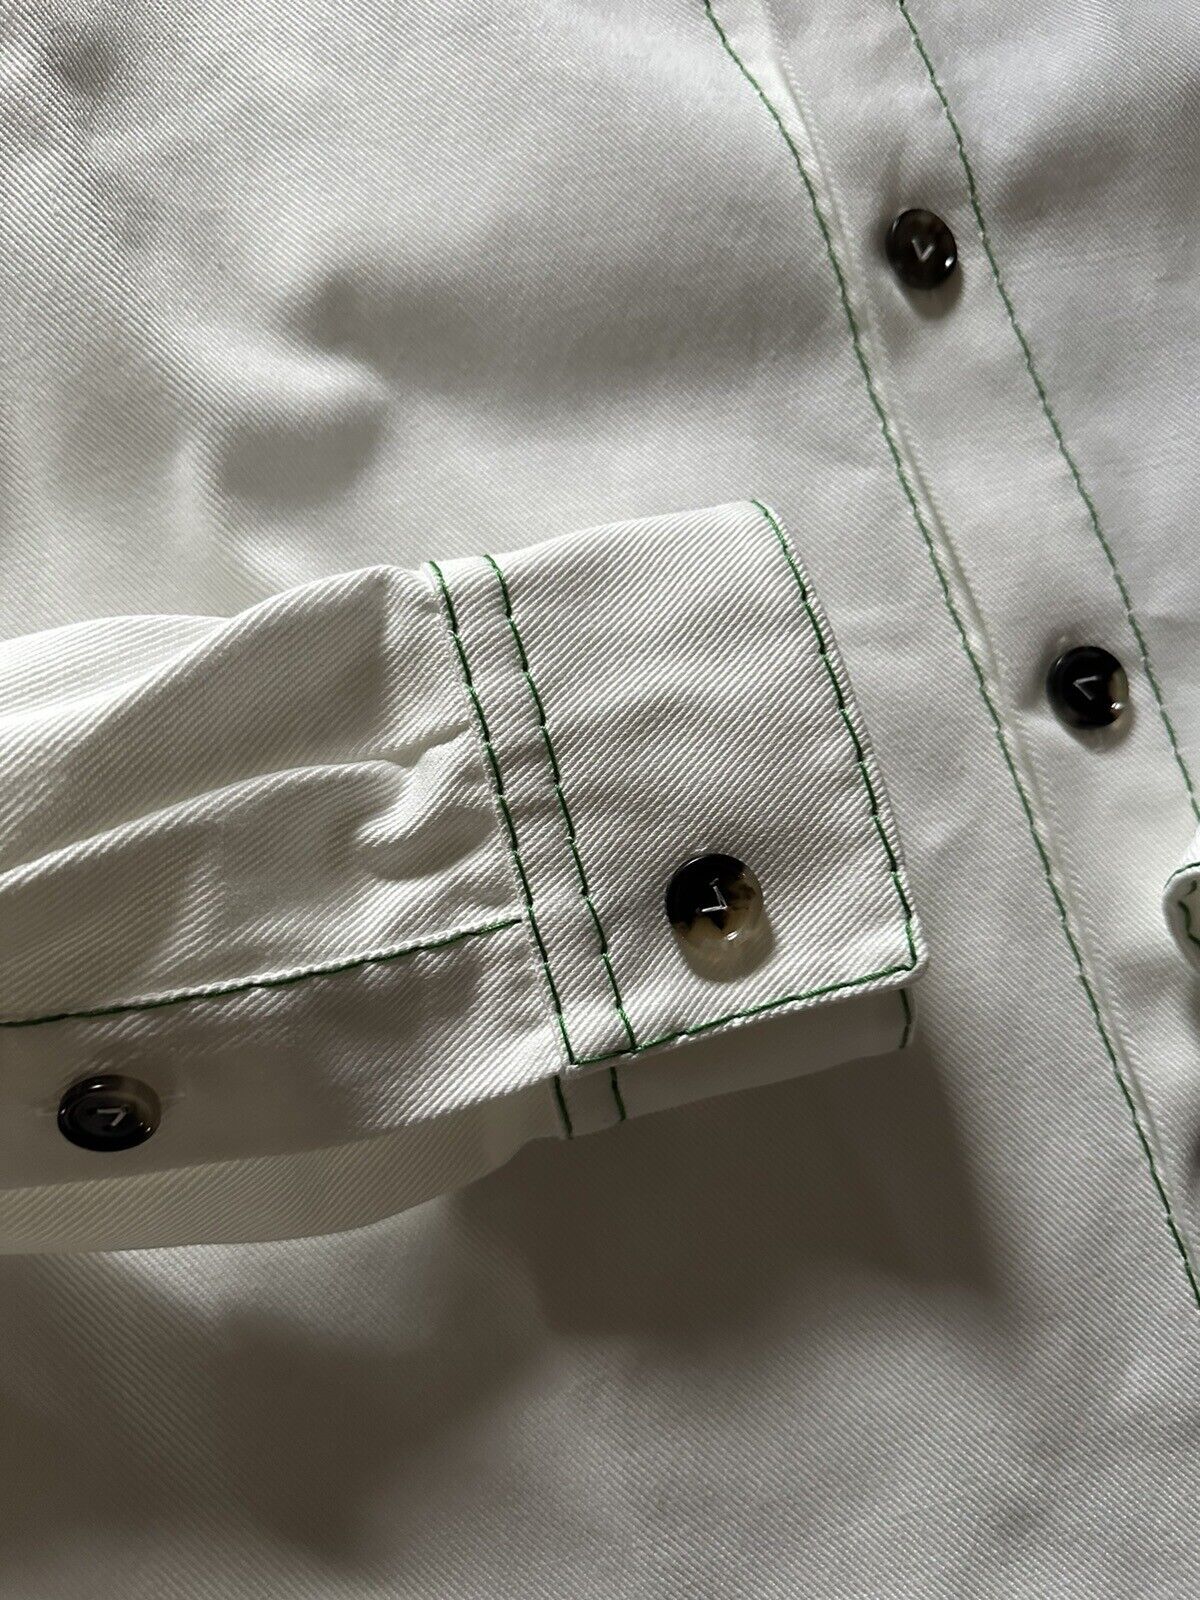 NWT $1200 Bottega Veneta Men Oversized Heavy Cotton Twill Shirt White 46 Eu/S